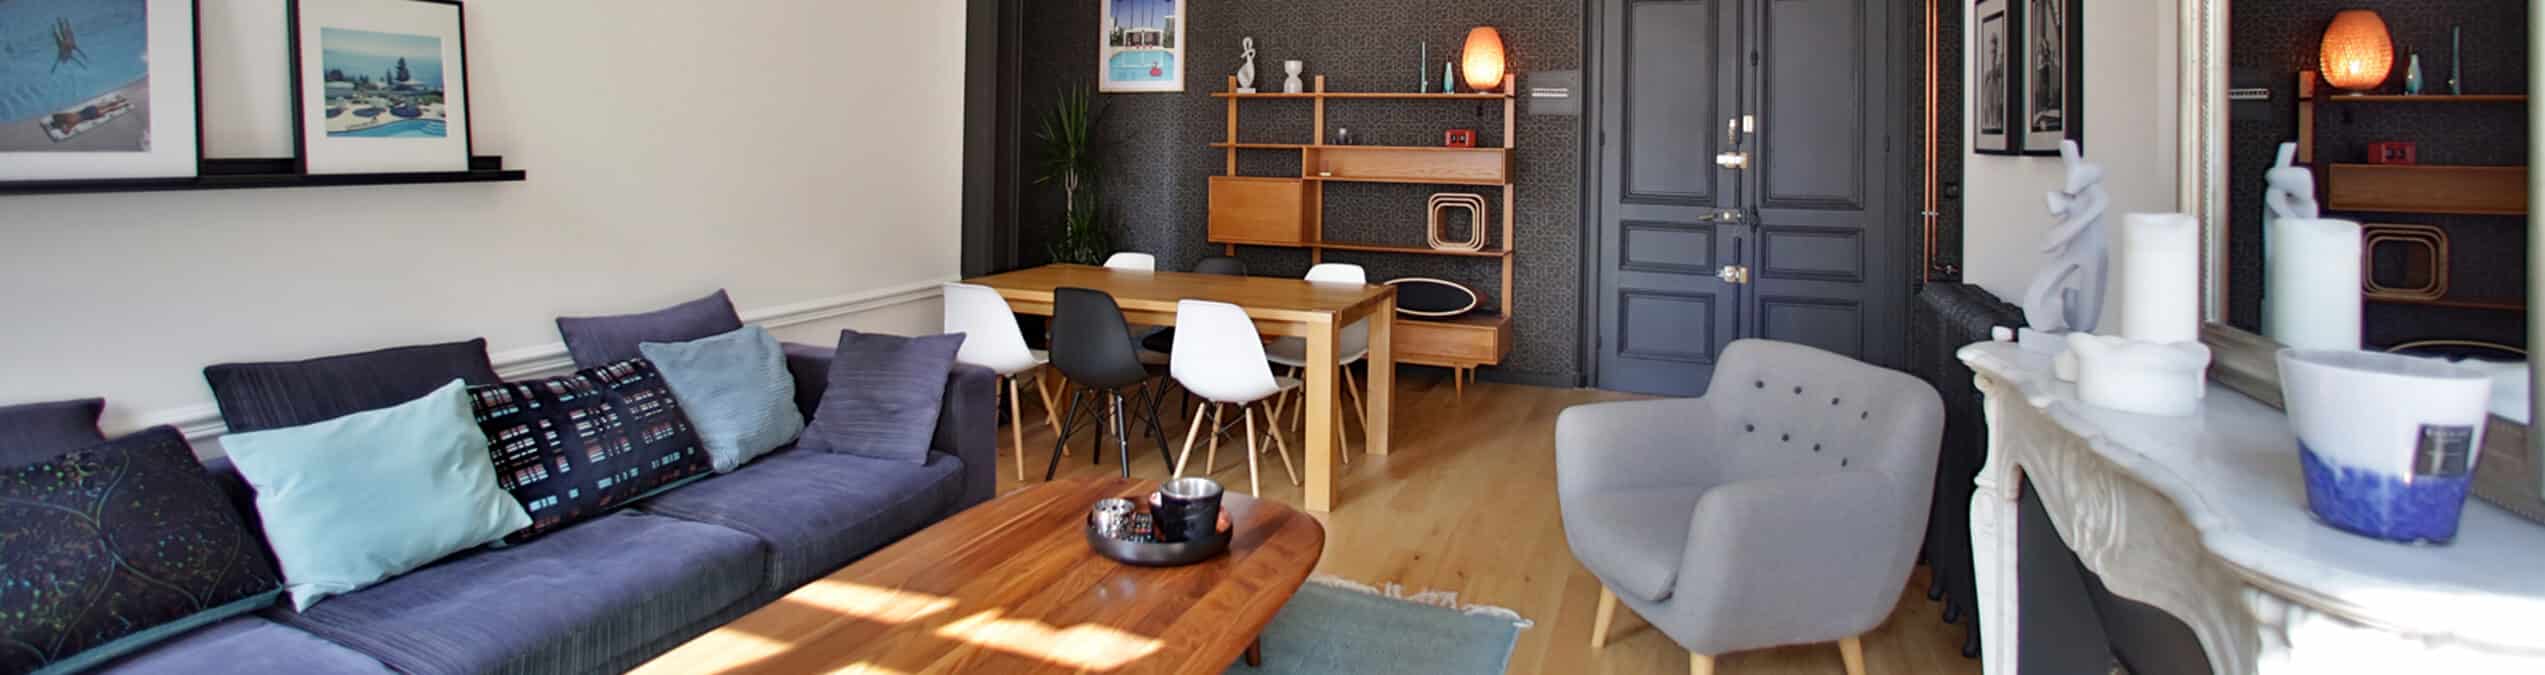 Rénovation tendance d'un appartement haussmannien - Granville - décoration d'intérieur